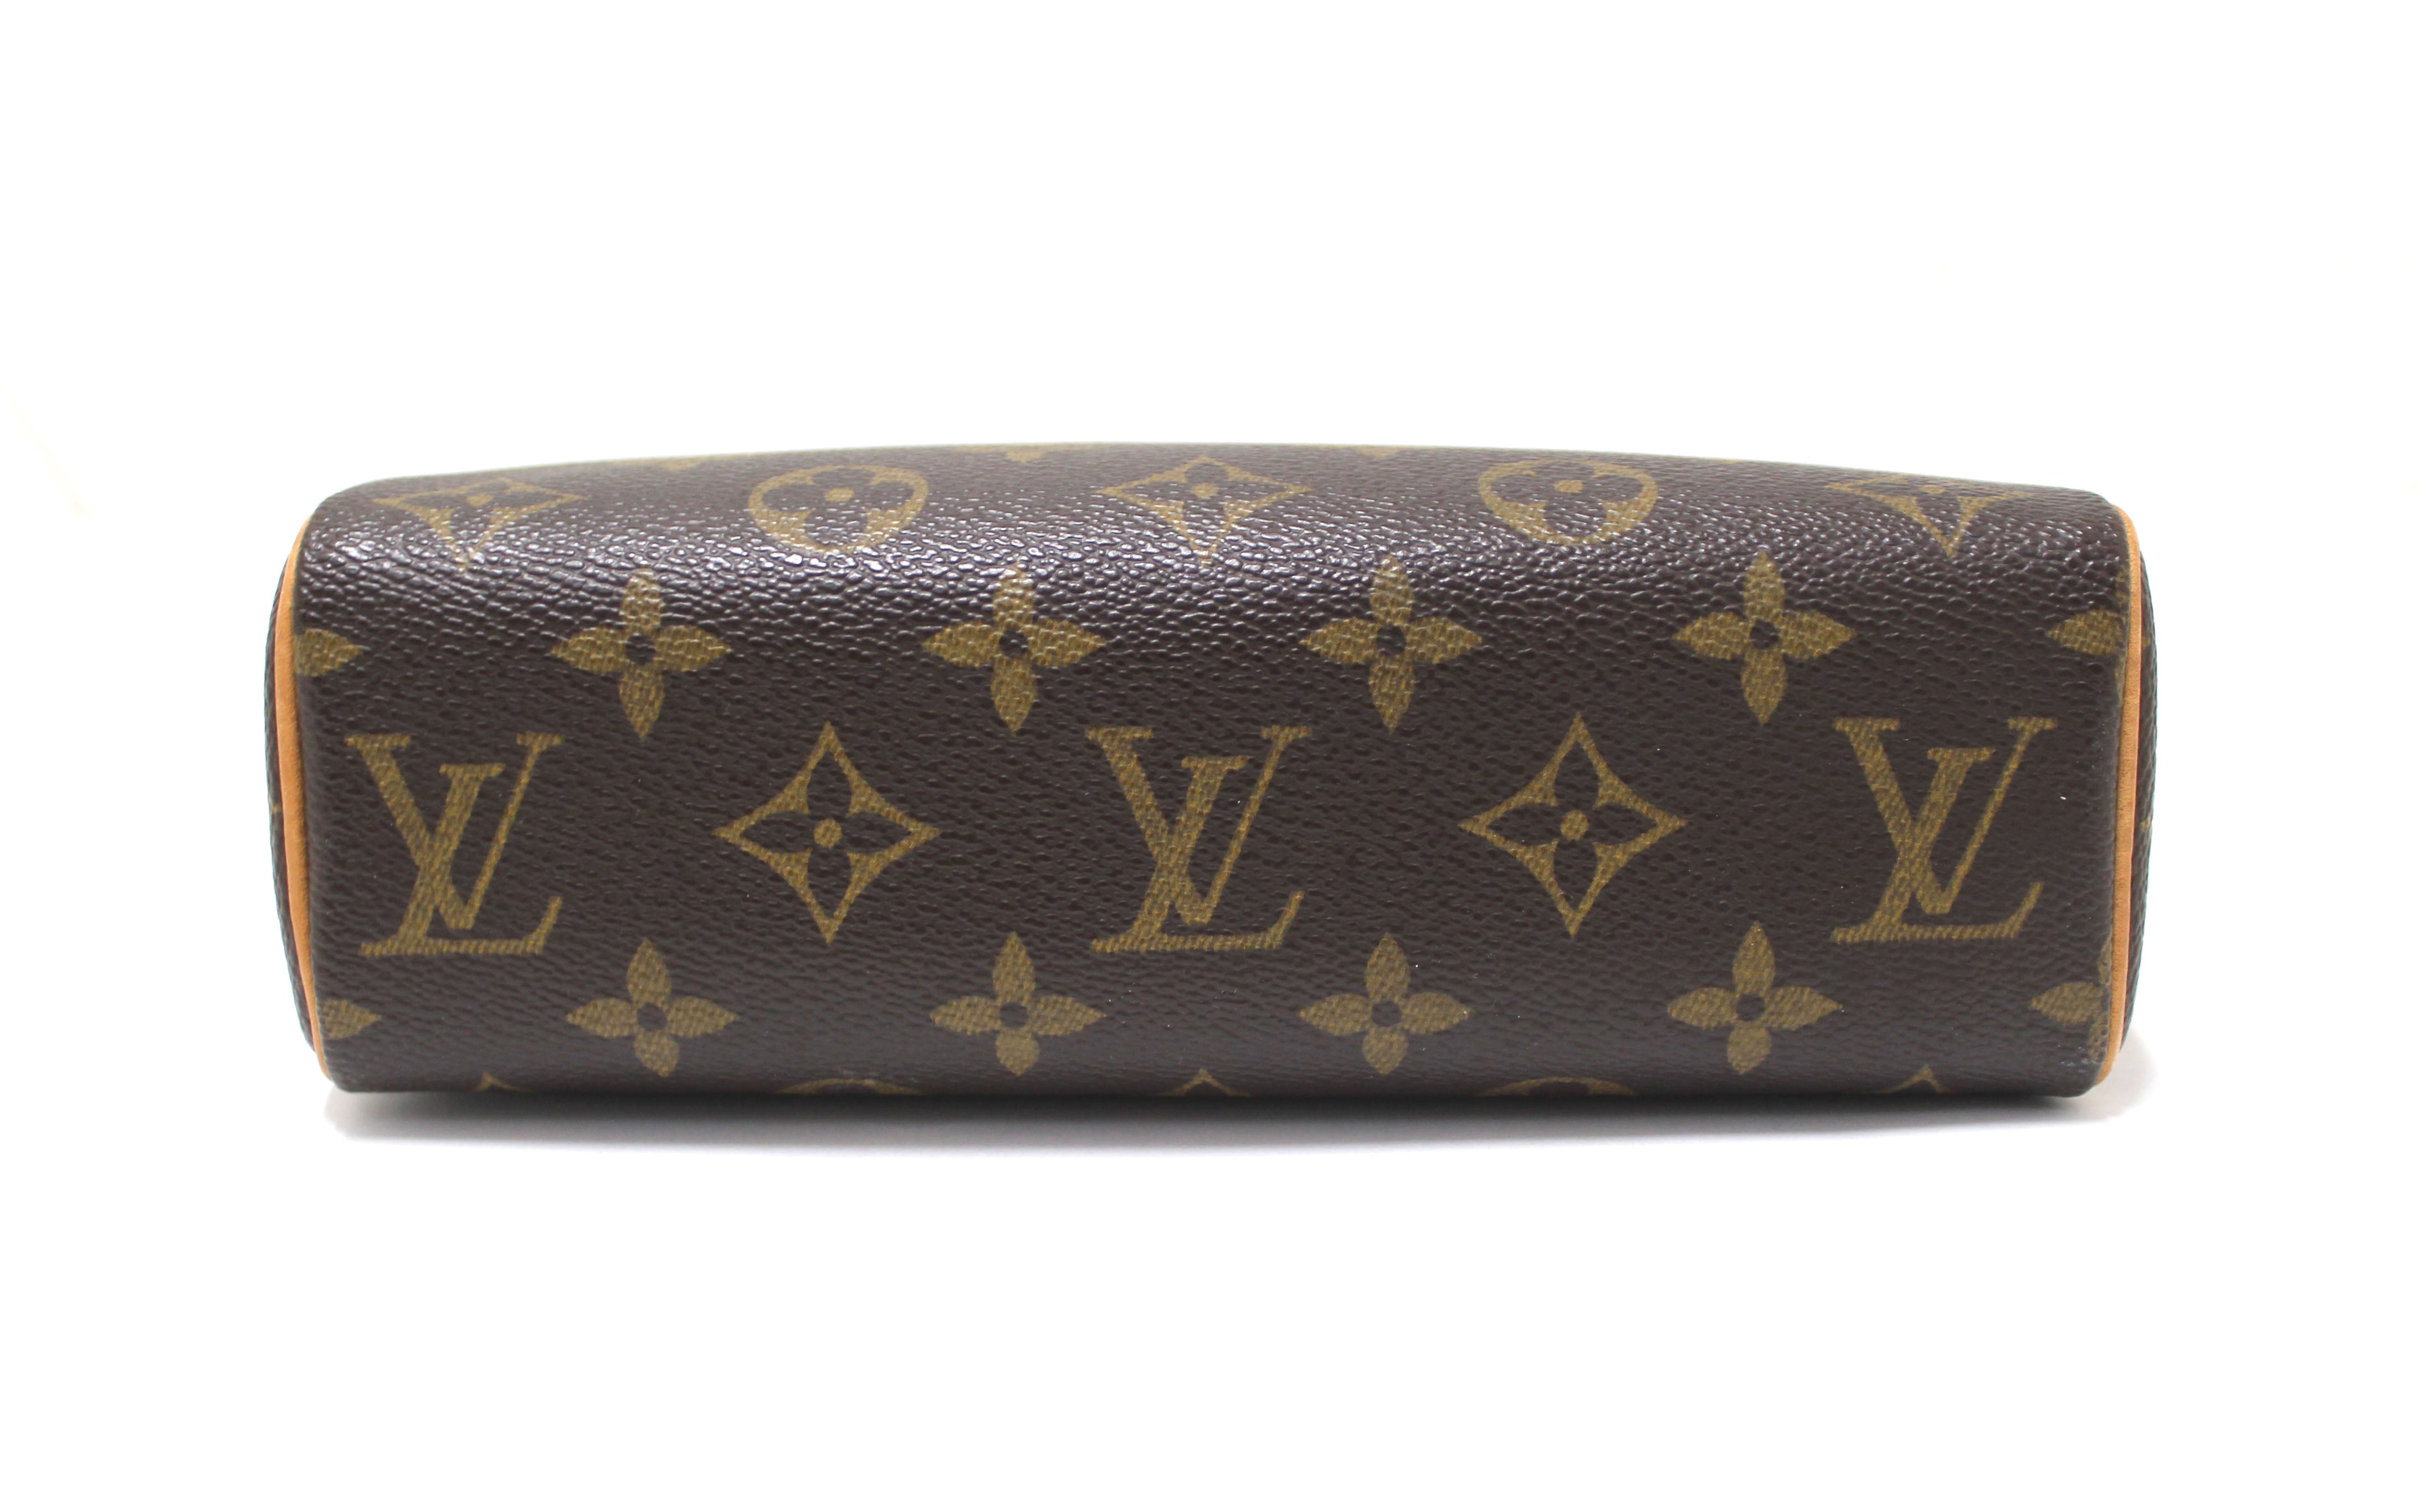 Authentic Louis Vuitton Classic Monogram Recital Bag – Paris Station Shop